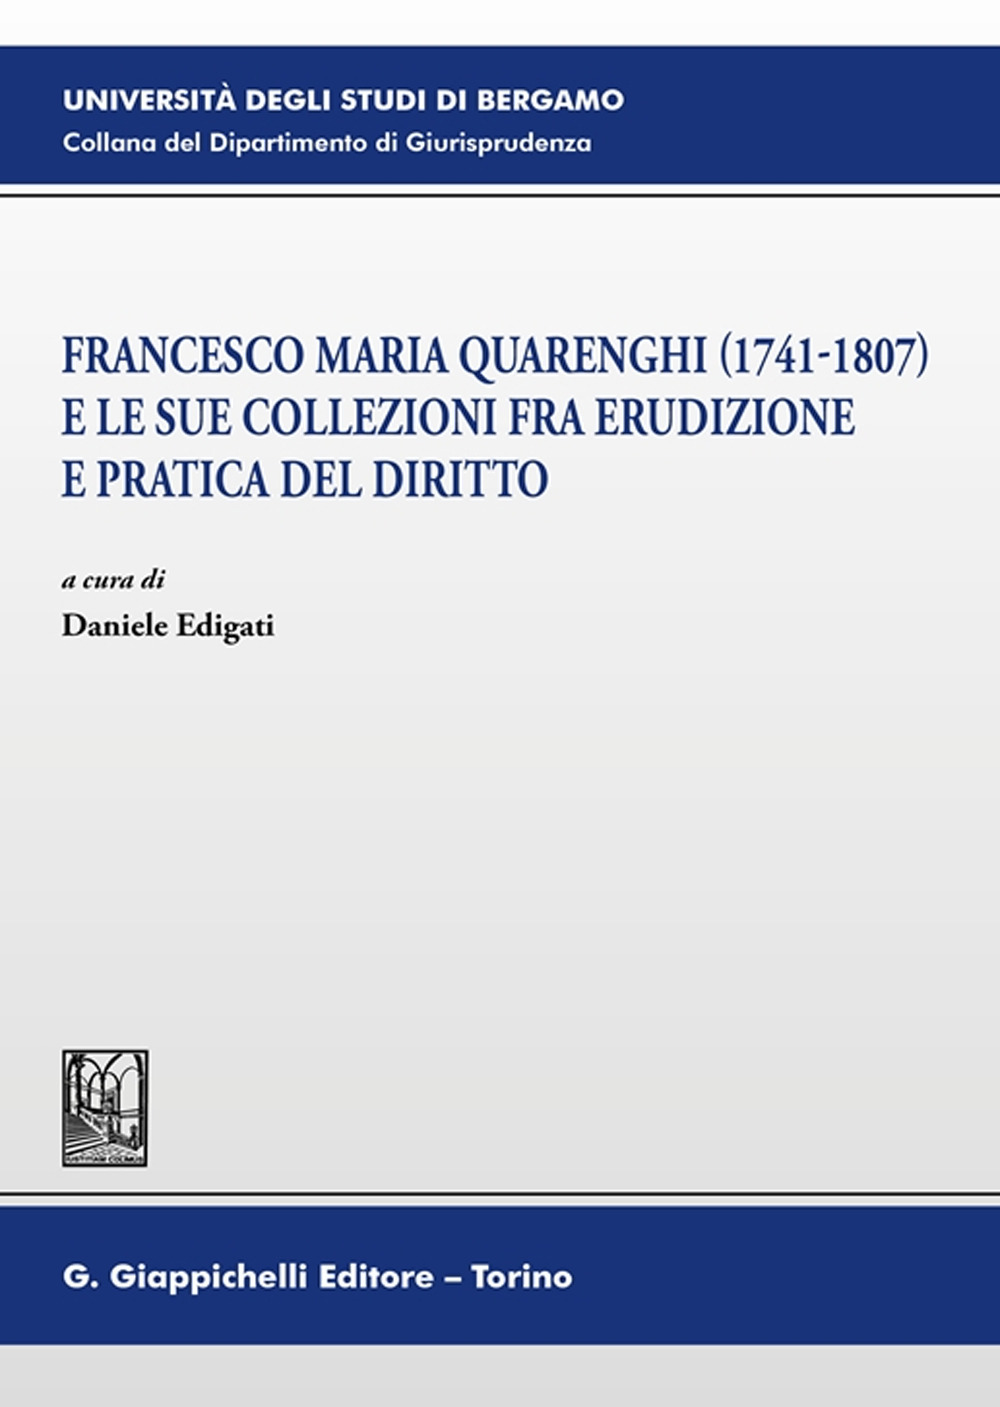 Francesco Maria Quarenghi (1741-1807) e le sue collezioni fra erudizione e pratica del diritto